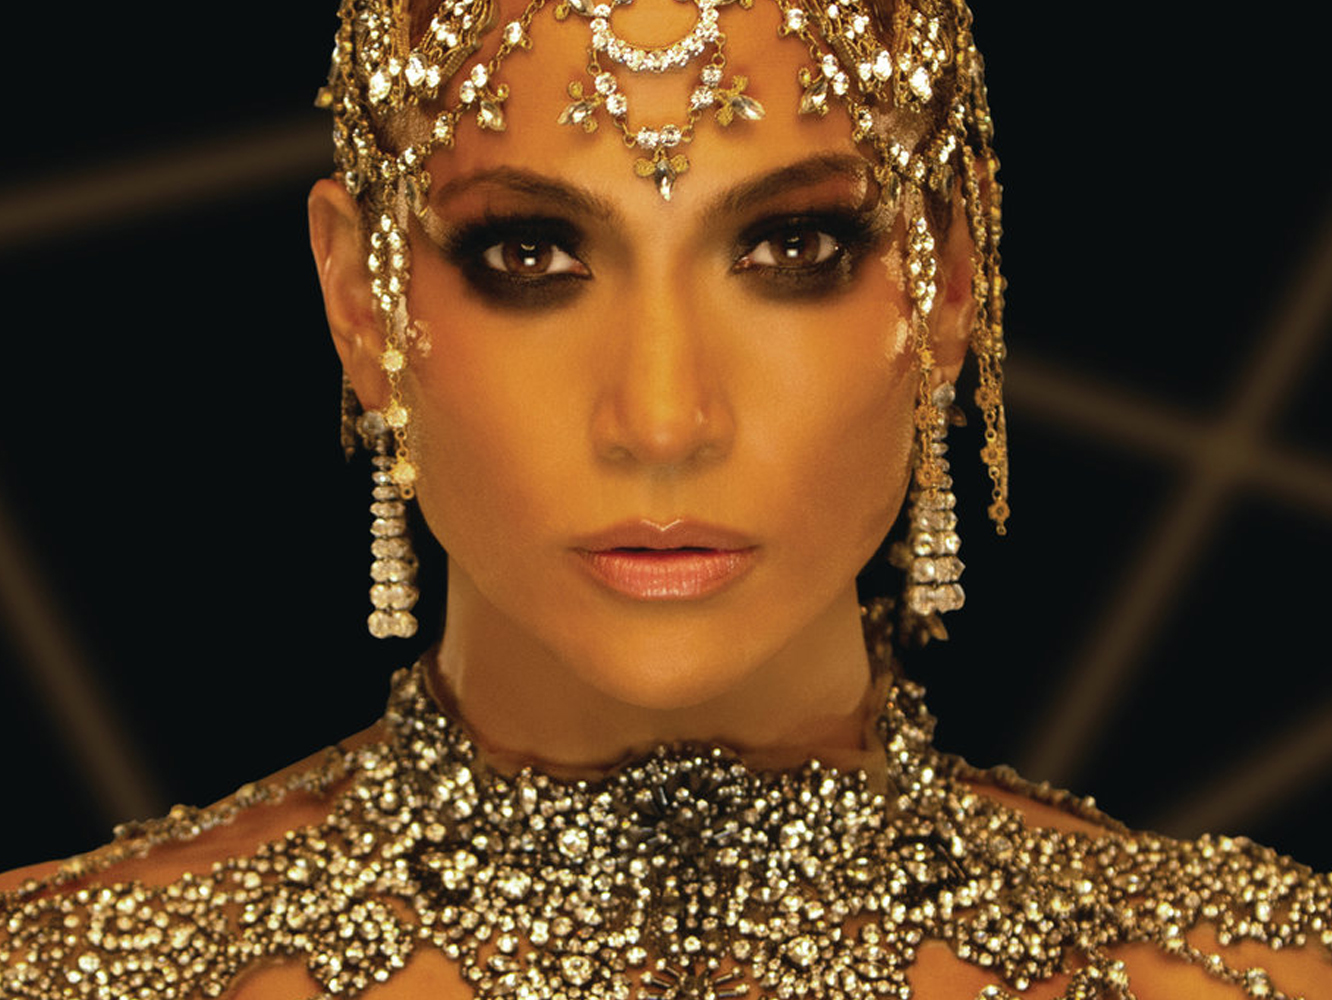  Jennifer Lopez “mueve la fruta” en ‘El Anillo’, su nuevo messy banger de la temporada